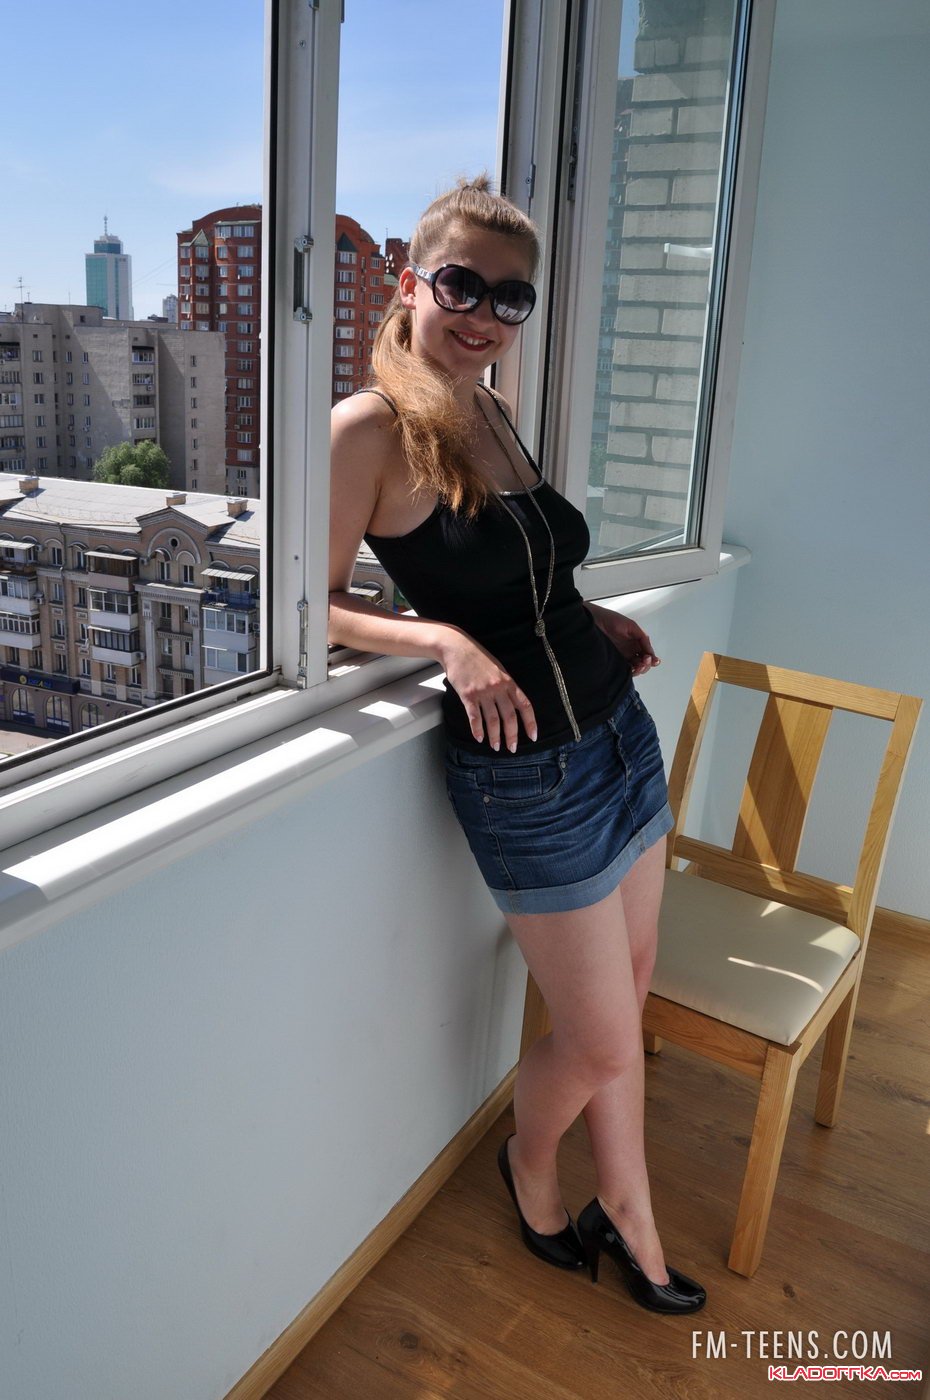 Фото Голых Девушек На Балконе